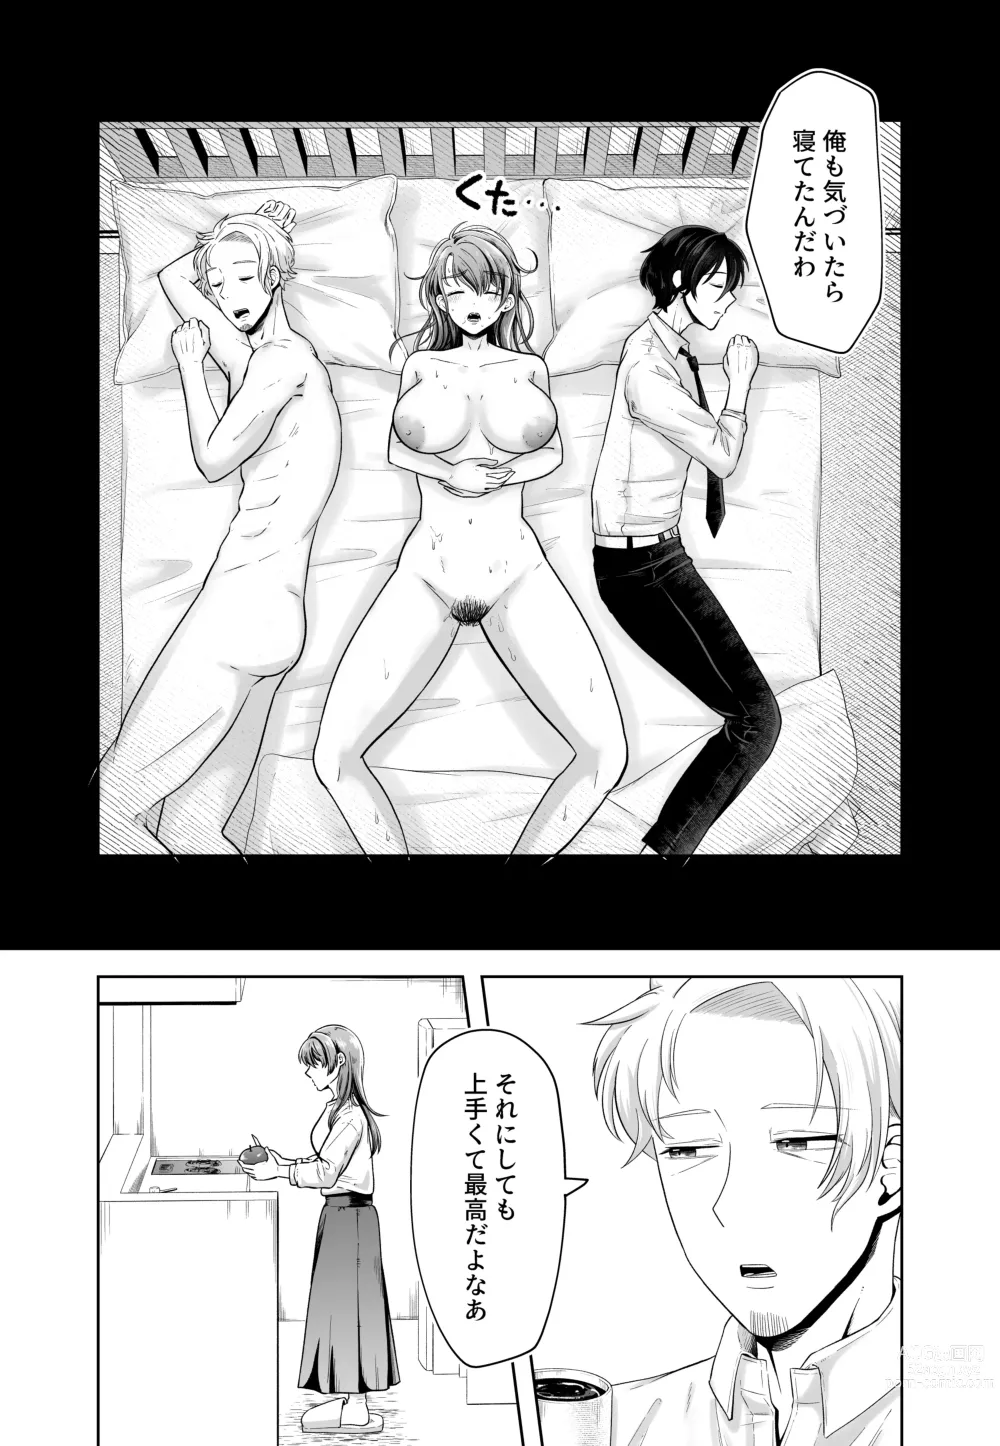 Page 51 of doujinshi Danna no Joushi ni Odosareru.